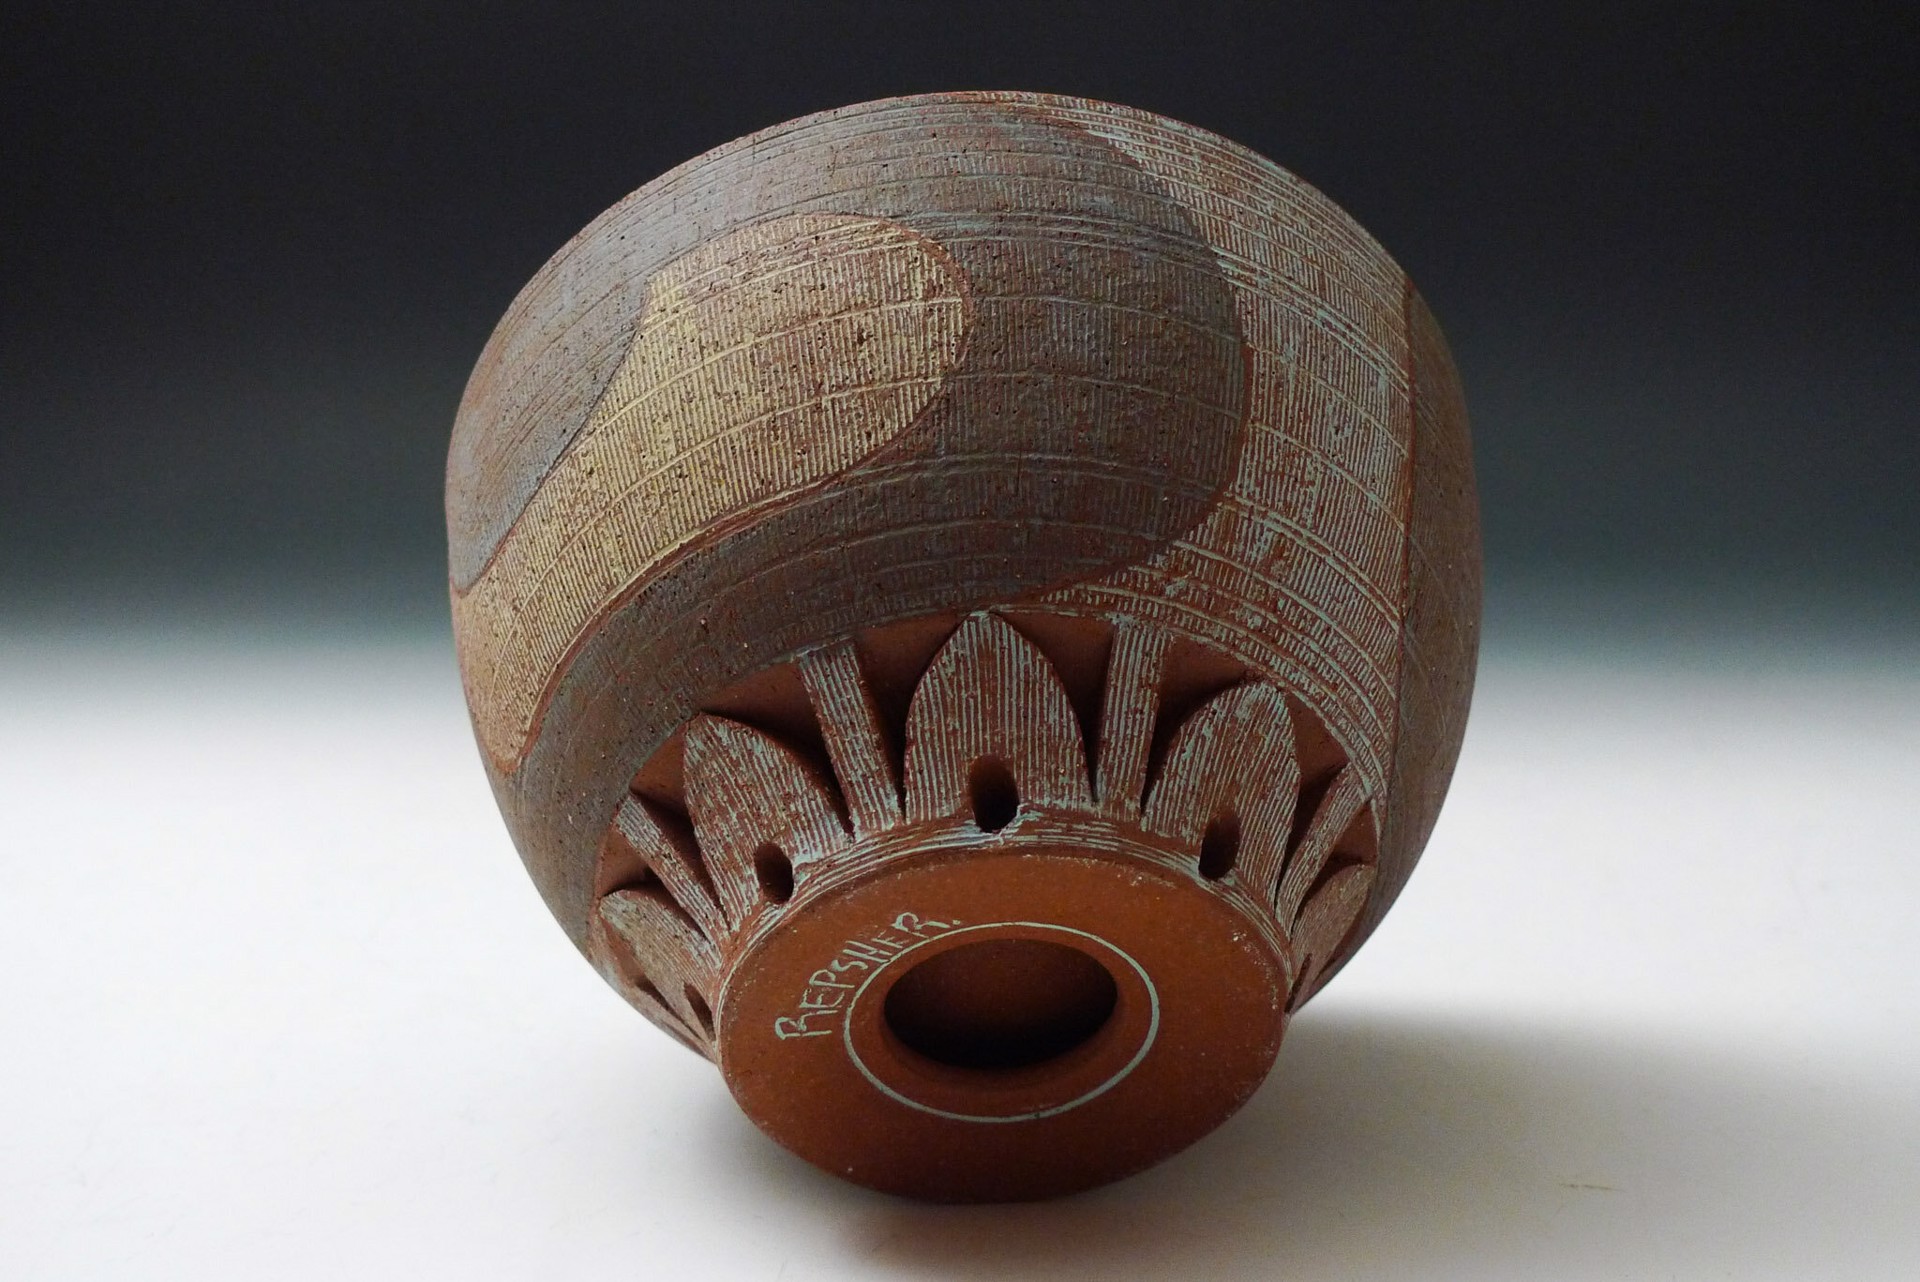 Bowl by Matt Repsher